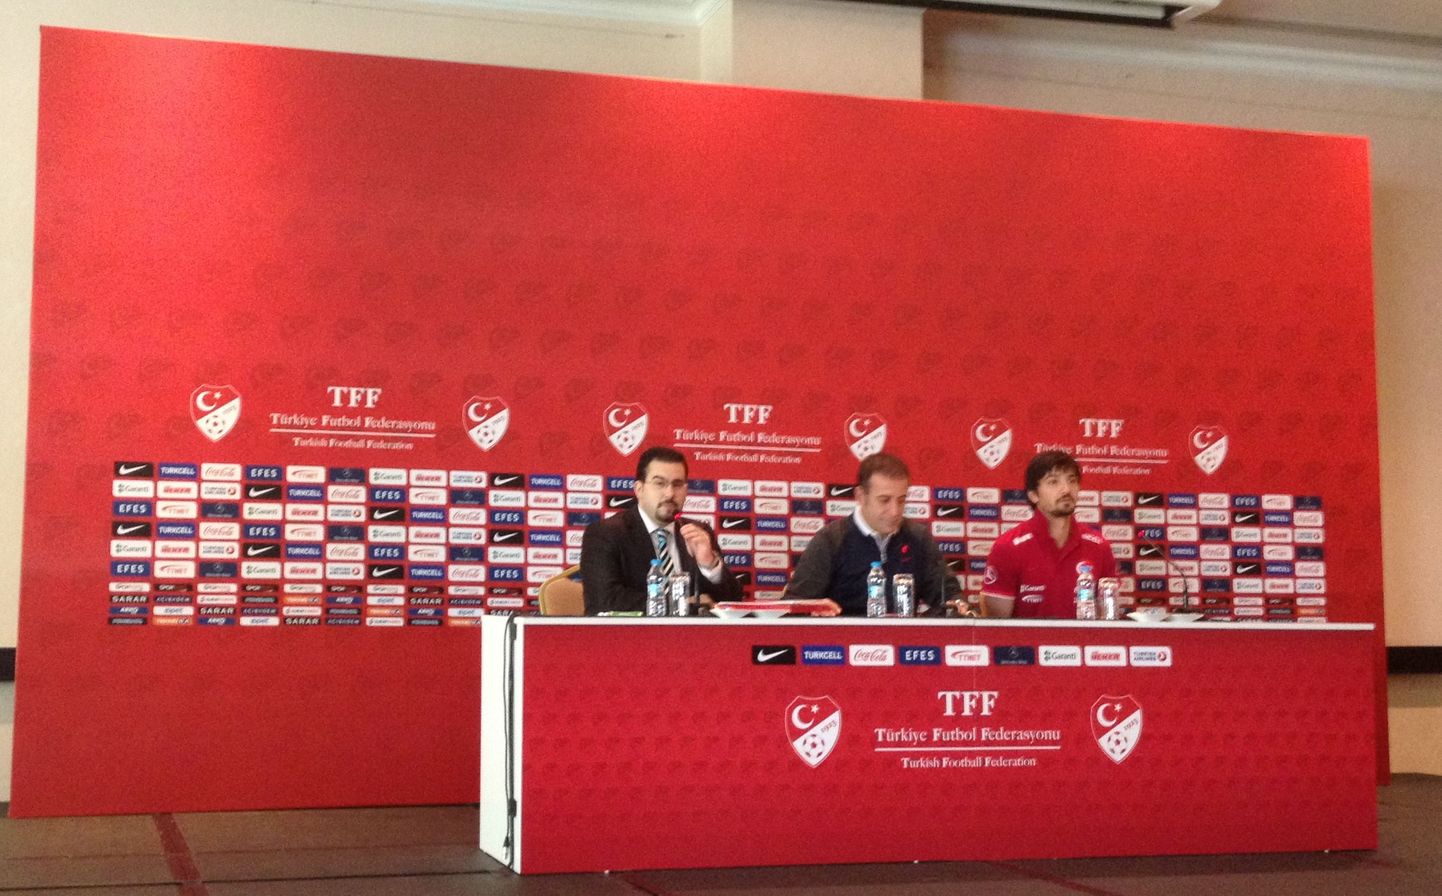 Türgi jalgpallikoondise peatreener Abdullah Avci (keskel) tänasel pressikonverentsil.